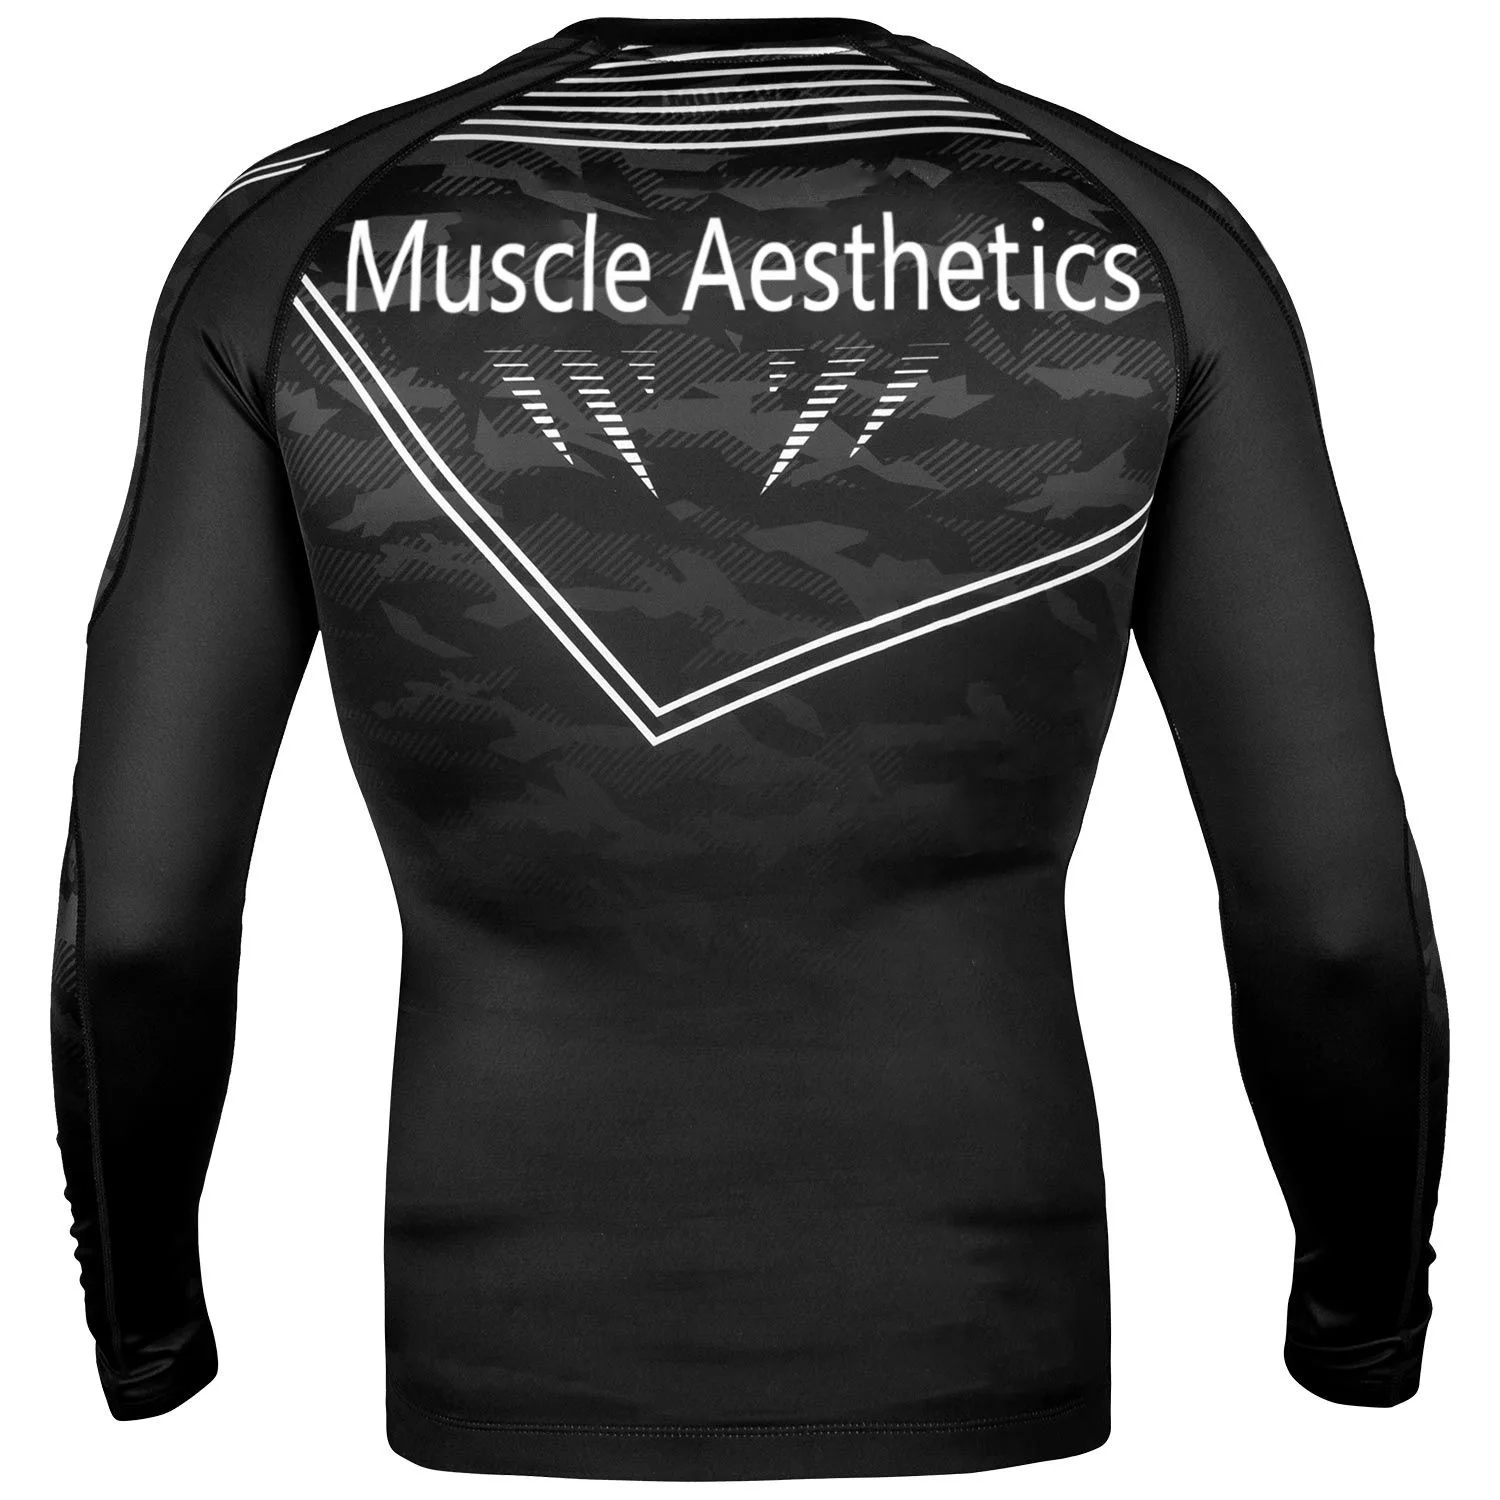 Мужская футболка с длинным рукавом, высокая эластичность, облегающая форма тела, Мужская одежда для фитнеса, велоспорта, мотоцикла